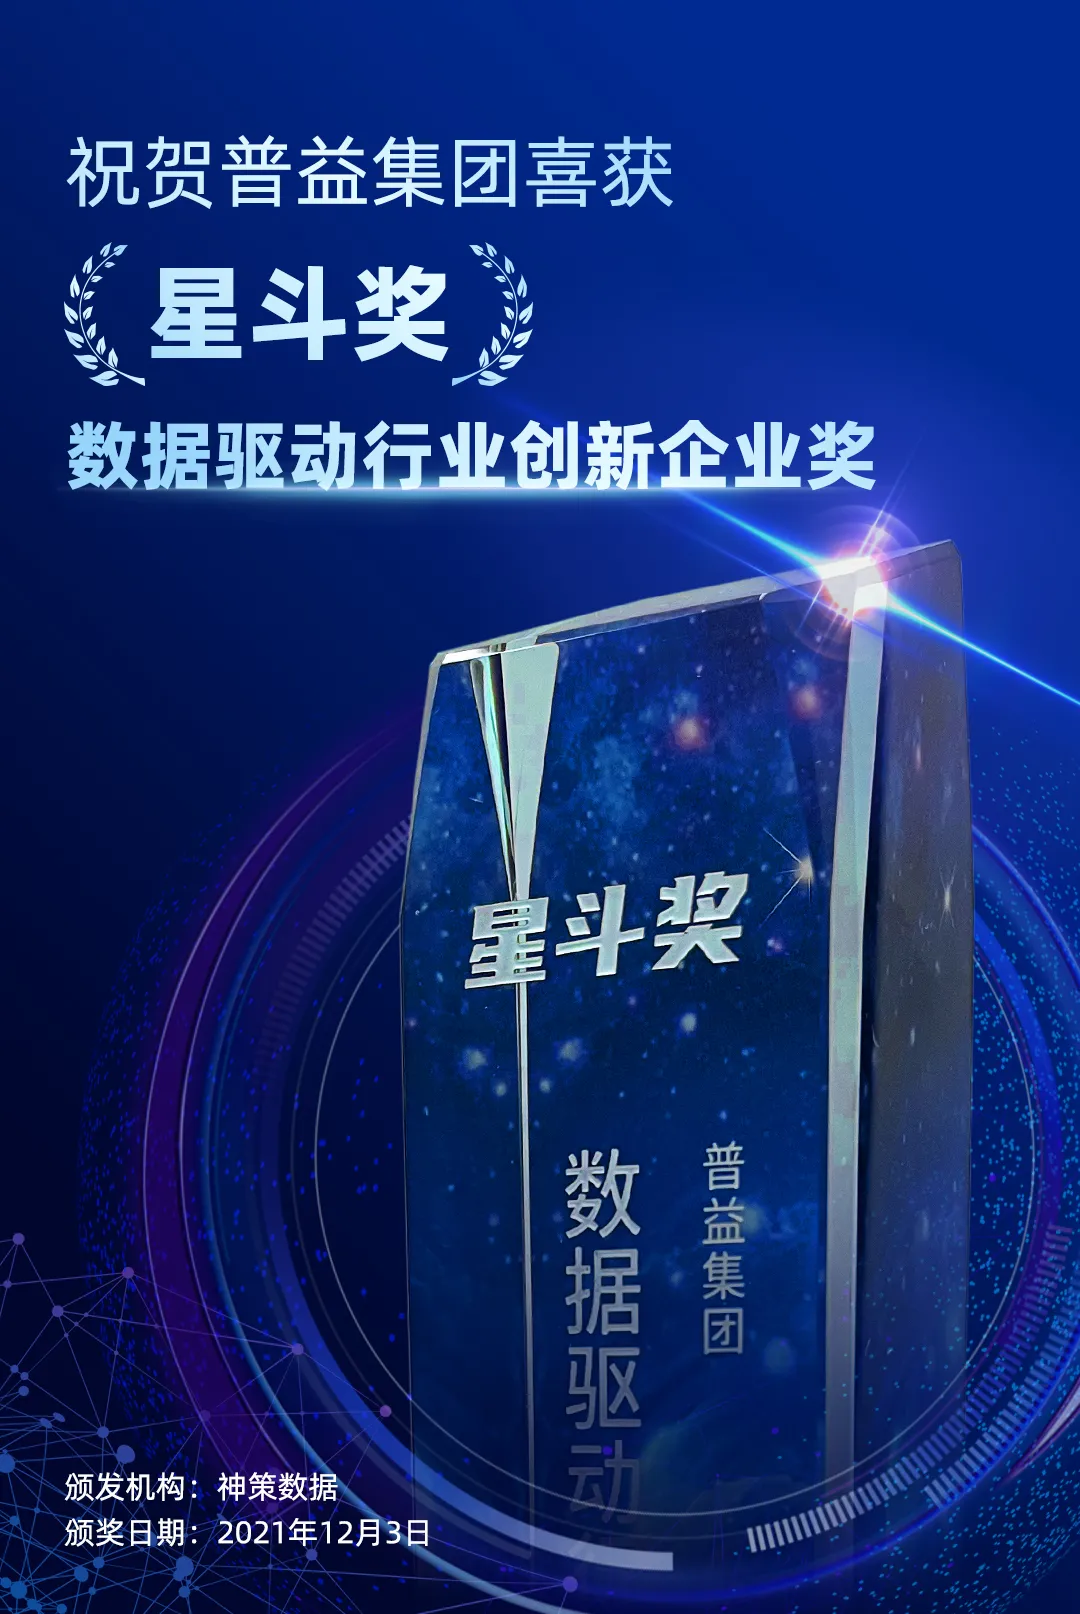 载誉前行！普益集团荣获“星斗奖-数据驱动行业创新企业奖”